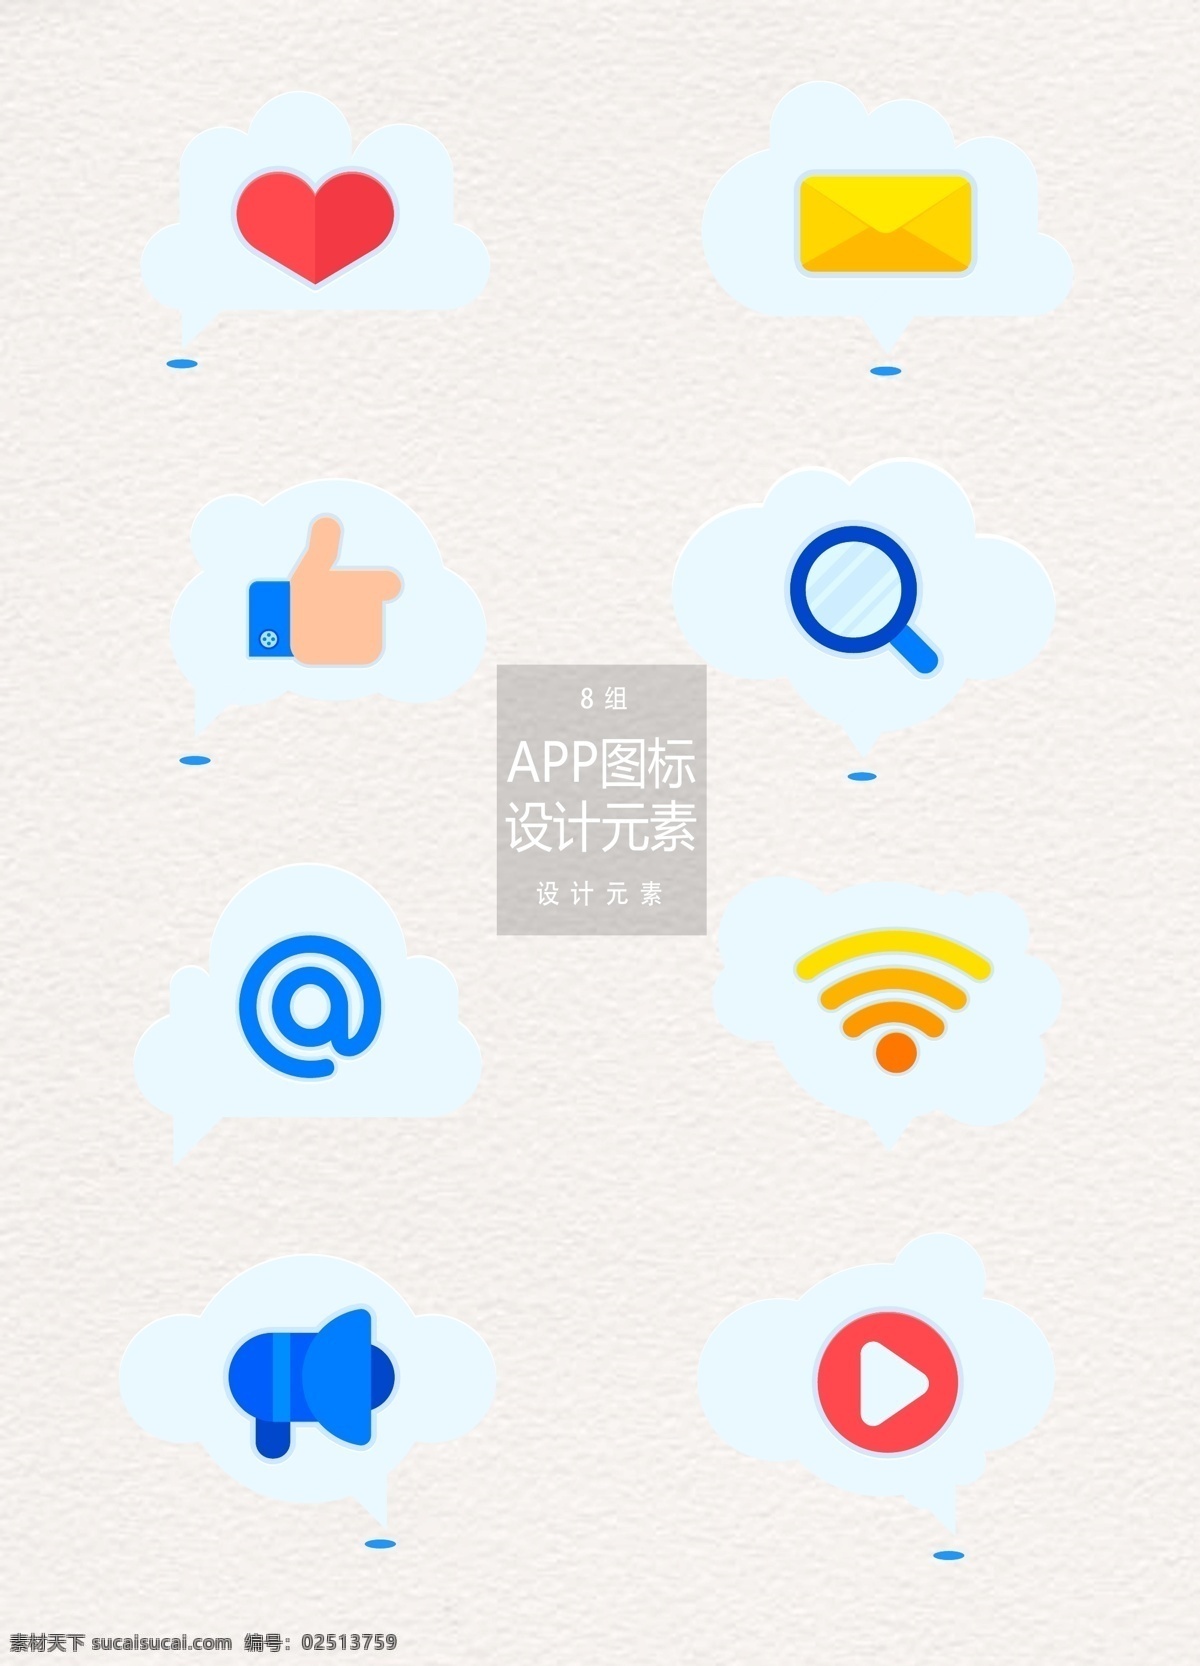 手机 app 图标 元素 手机app app图标 爱心 喇叭 视频 设计元素 社交图标 点赞 weifi 邮件 搜索